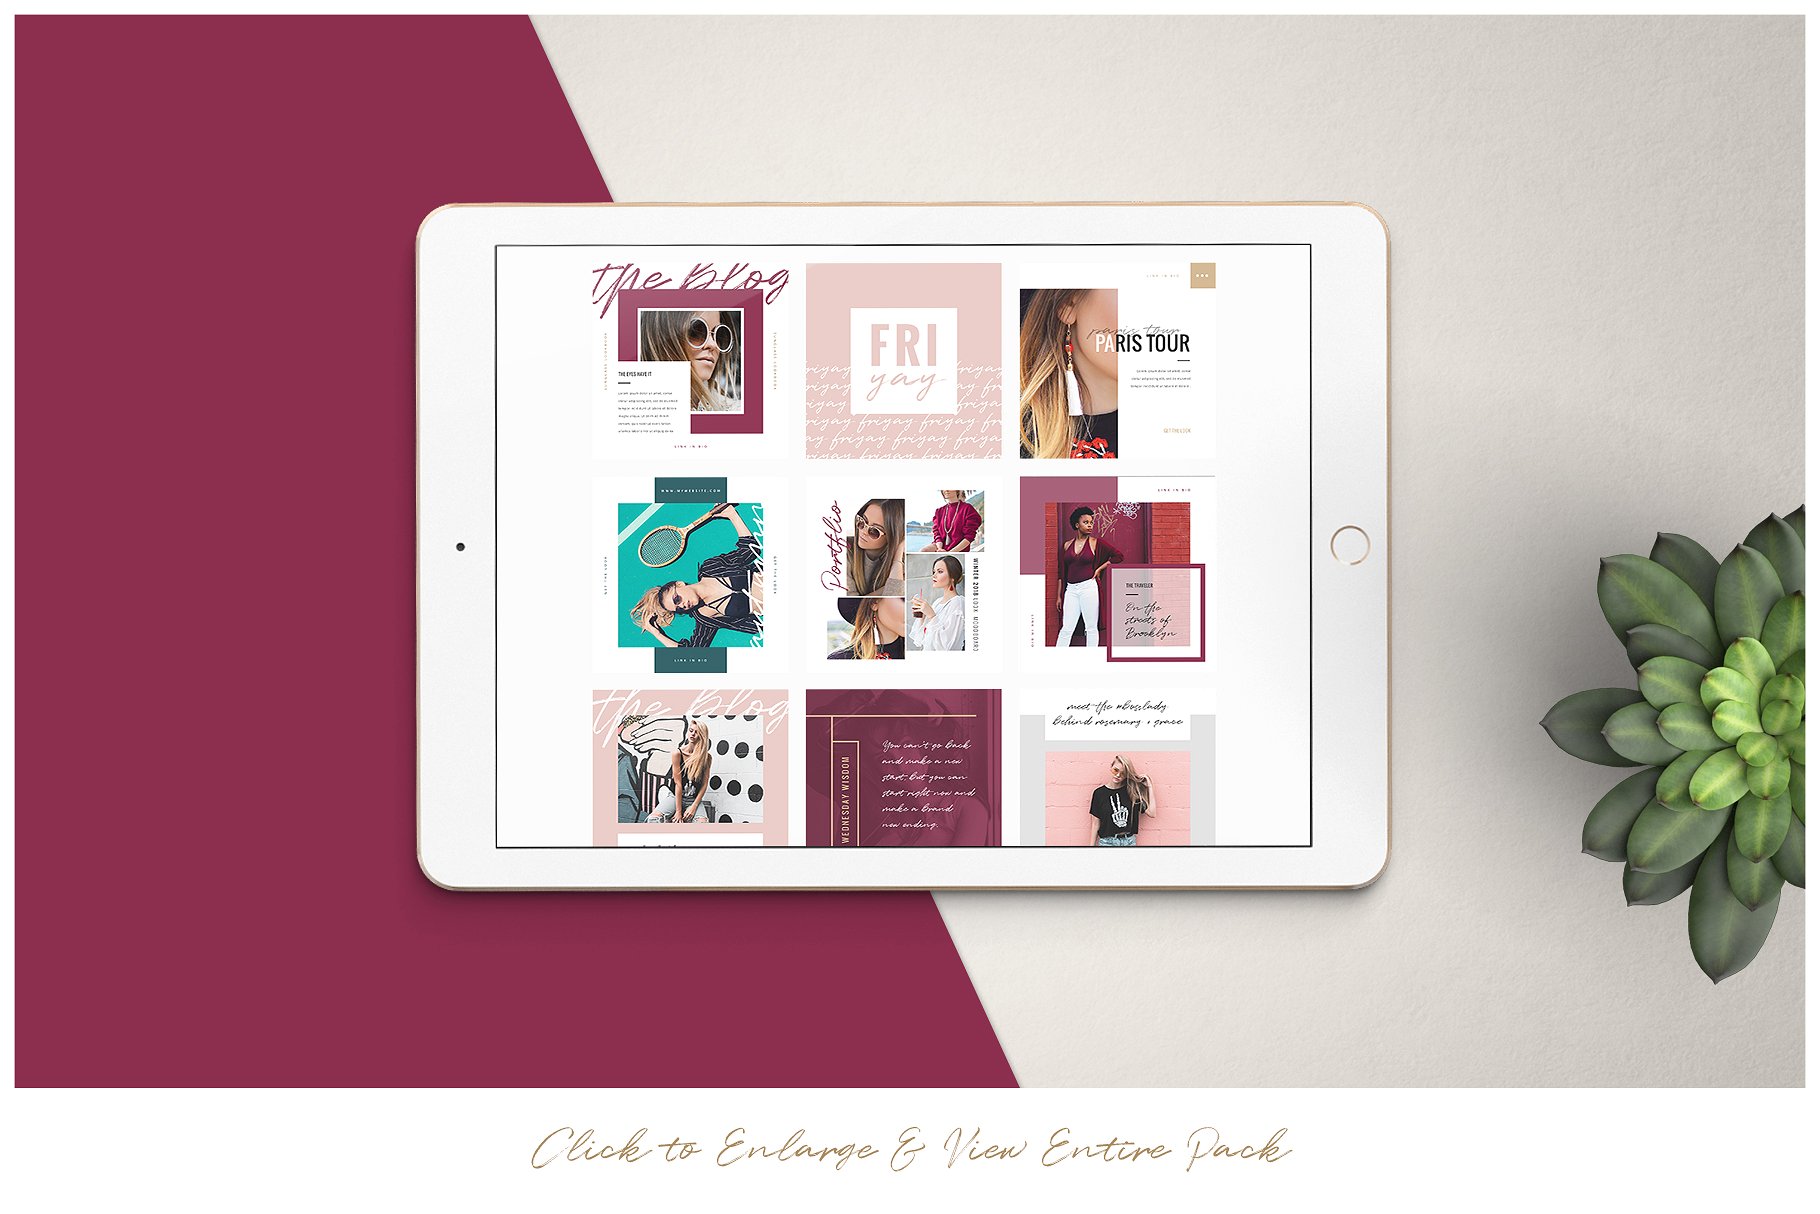 潮流时尚主题社交媒体贴图模板第一素材精选素材 BROOKLYN | Social Media Pack插图(5)